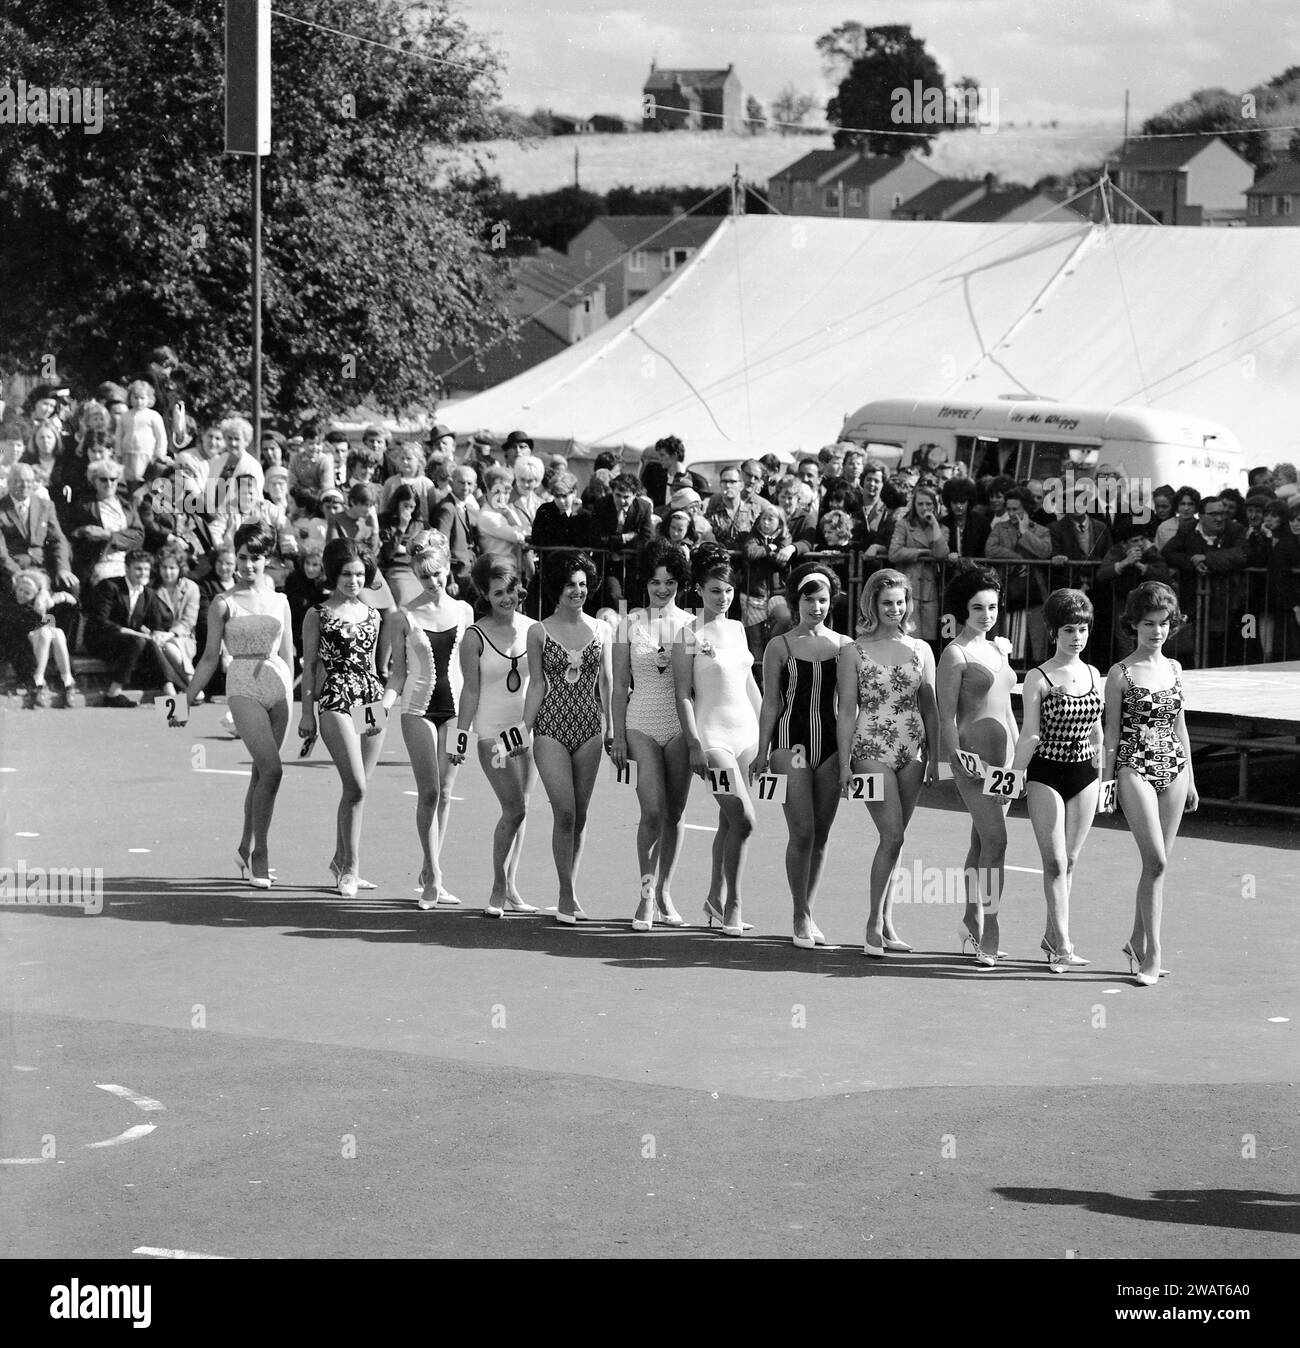 Années 1960, historiques, les spectateurs regardant un concours de reine de beauté, tandis que les dames en maillot de bain et tenant des numéros de concours, s'alignent pour une photo de groupe, Angleterre, Royaume-Uni. Derrière la foule, une grande tente et un Happee ! M. Whippy van vend de la crème glacée molle. Dans la Grande-Bretagne d'après-guerre, les concours de beauté étaient une forme de divertissement populaire pour les personnes en vacances dans les stations balnéaires. En 1945, Morecambe dans le Lancashire voit le premier concours Miss Grande-Bretagne avoir lieu. Banque D'Images